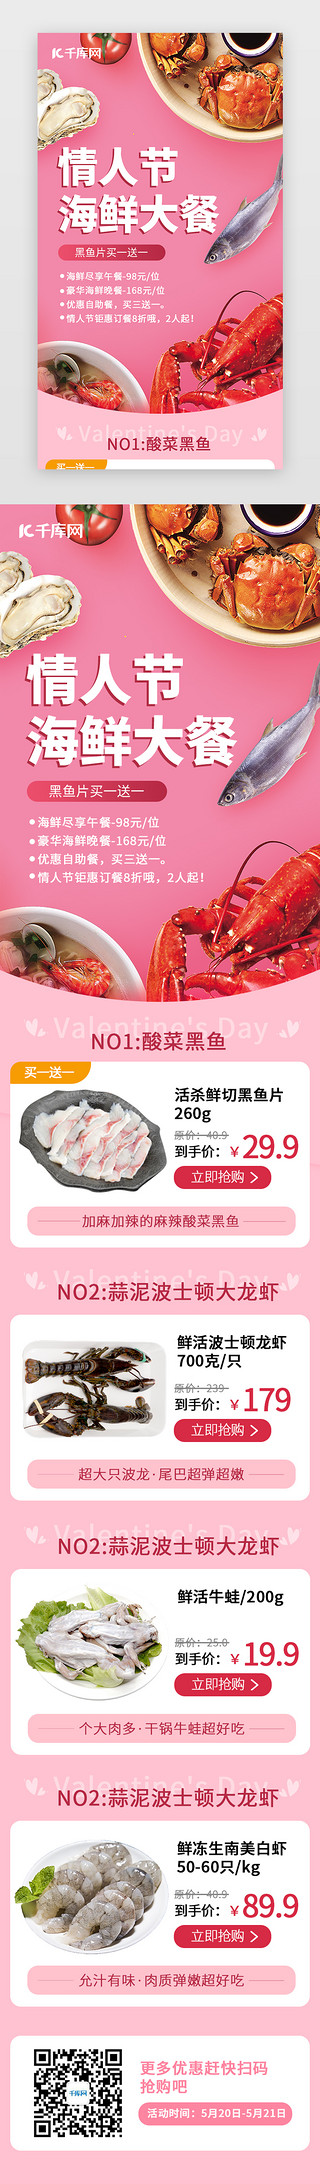 韩国海鲜UI设计素材_情人节海鲜大餐H5